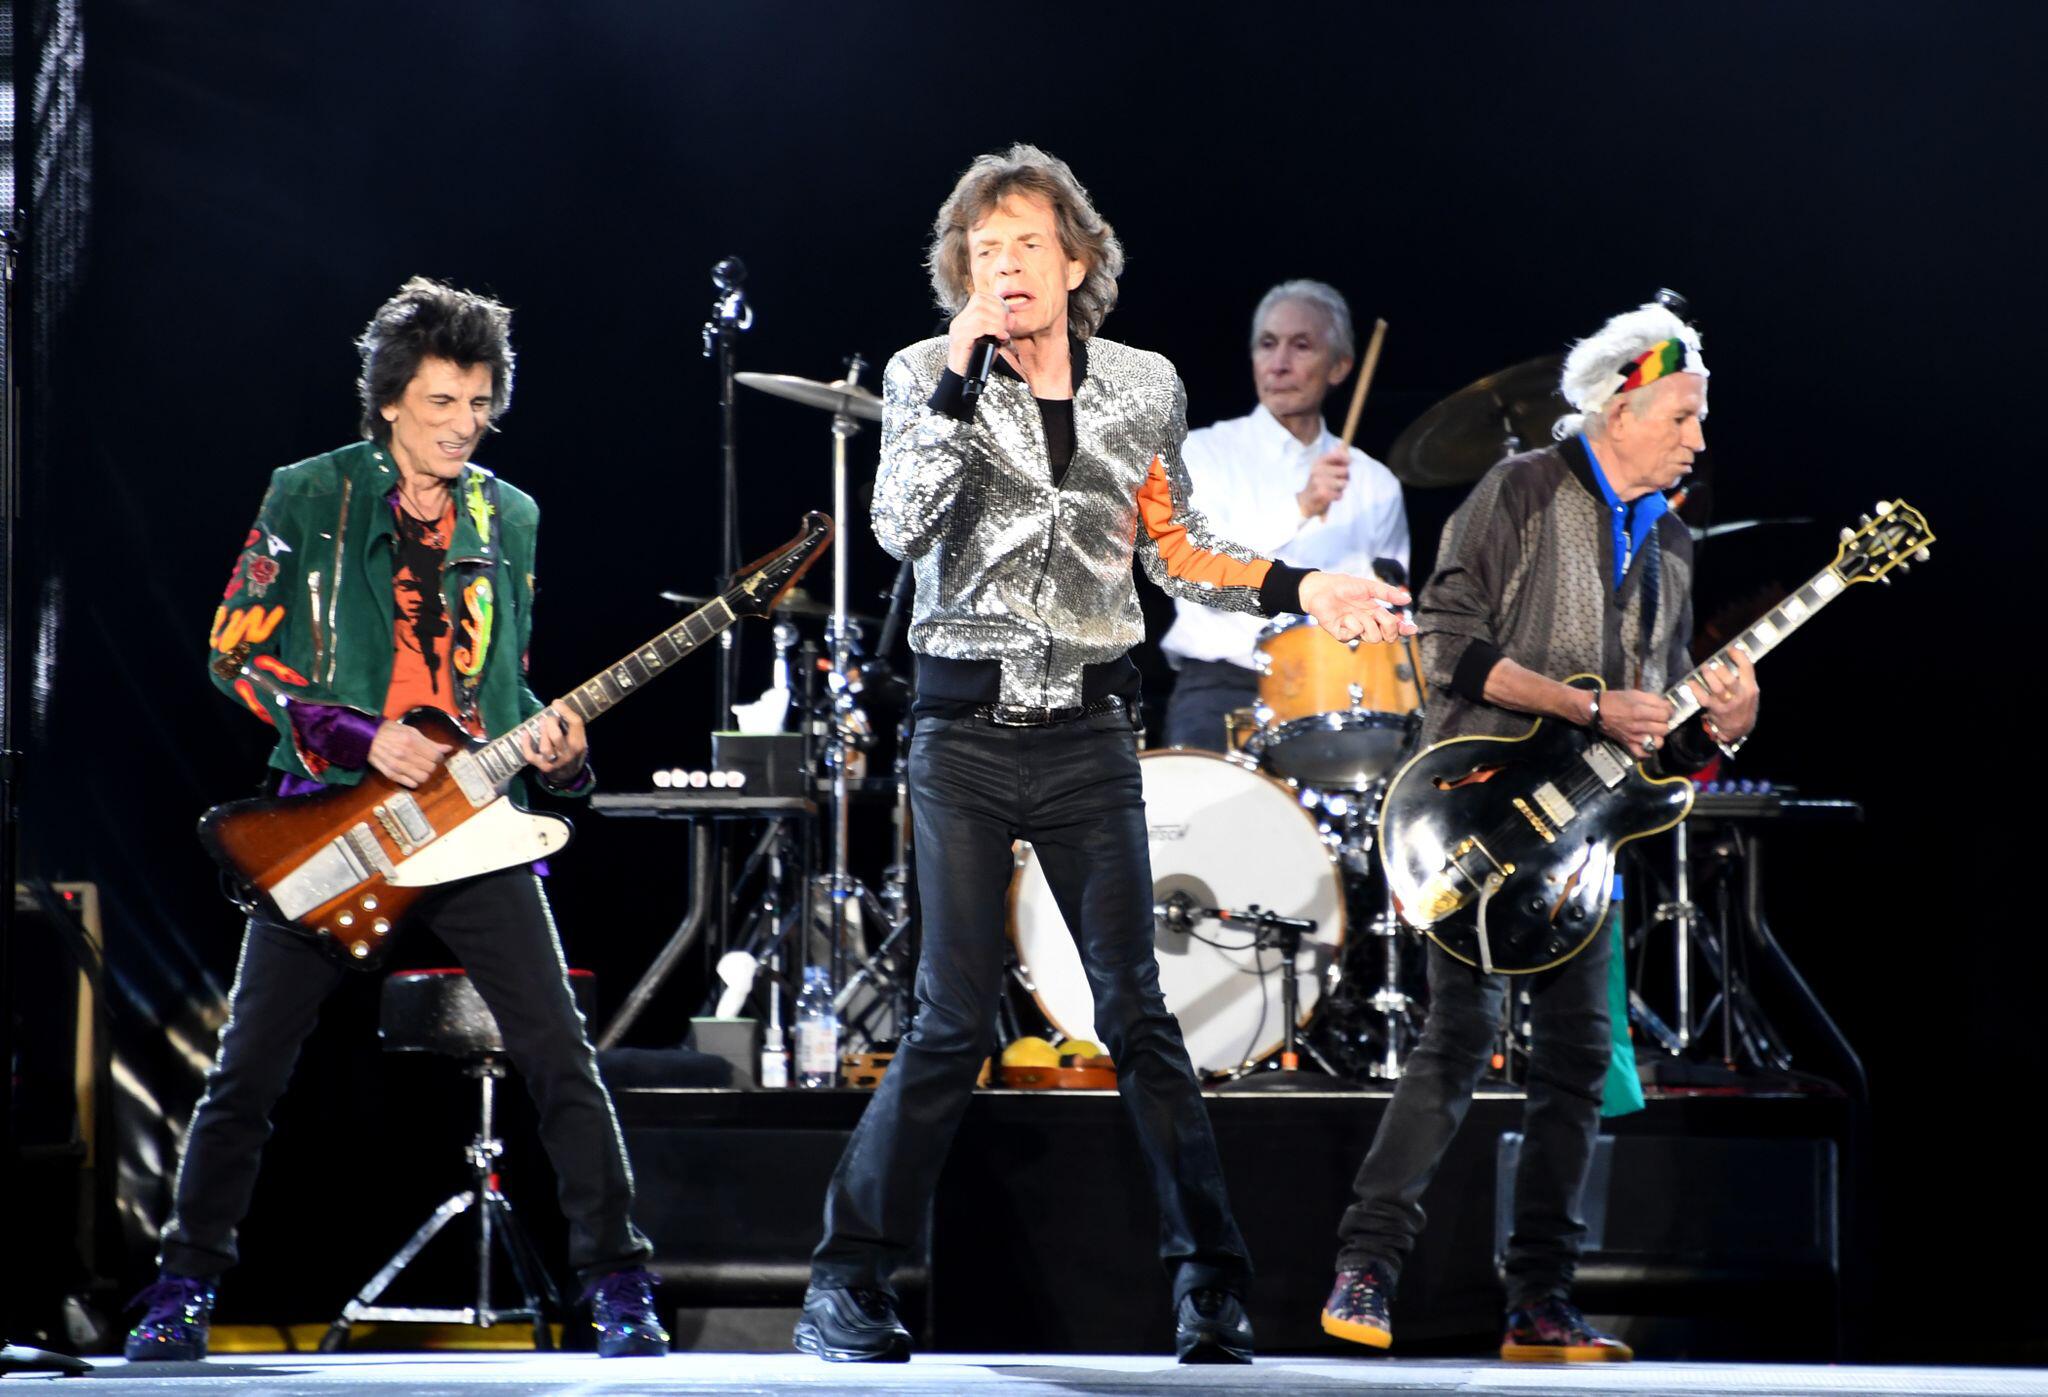 Unerlaubt Musik verwendet: Rolling Stones gehen gegen US-Präsident